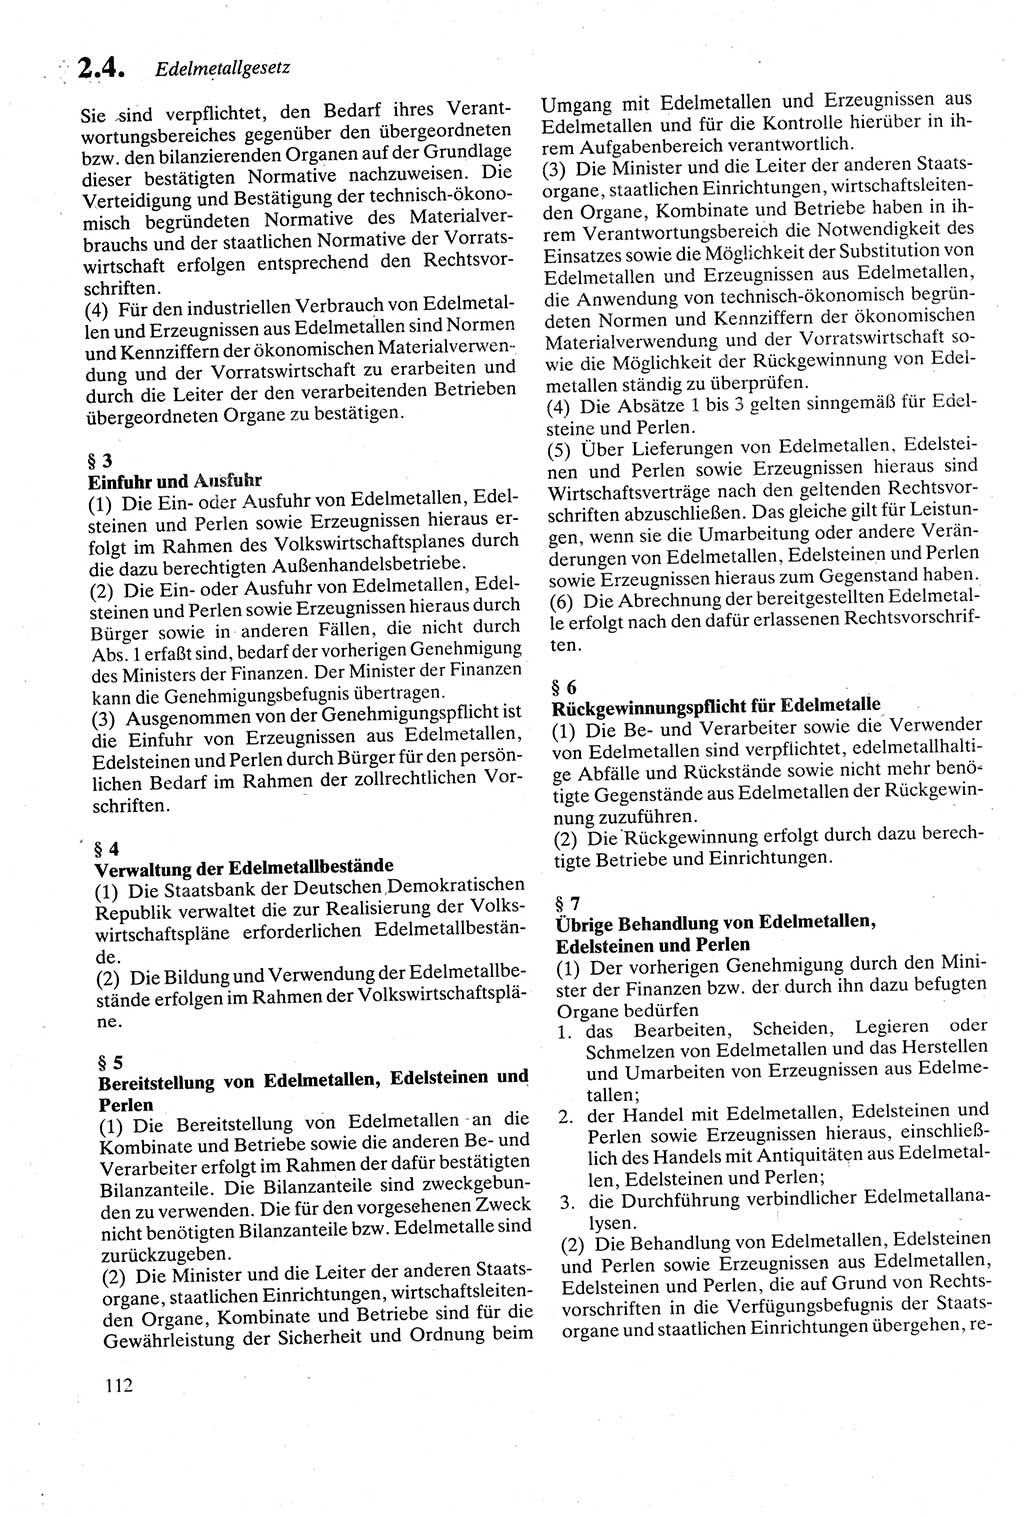 Strafgesetzbuch (StGB) der Deutschen Demokratischen Republik (DDR) sowie angrenzende Gesetze und Bestimmungen 1979, Seite 112 (StGB DDR Ges. Best. 1979, S. 112)